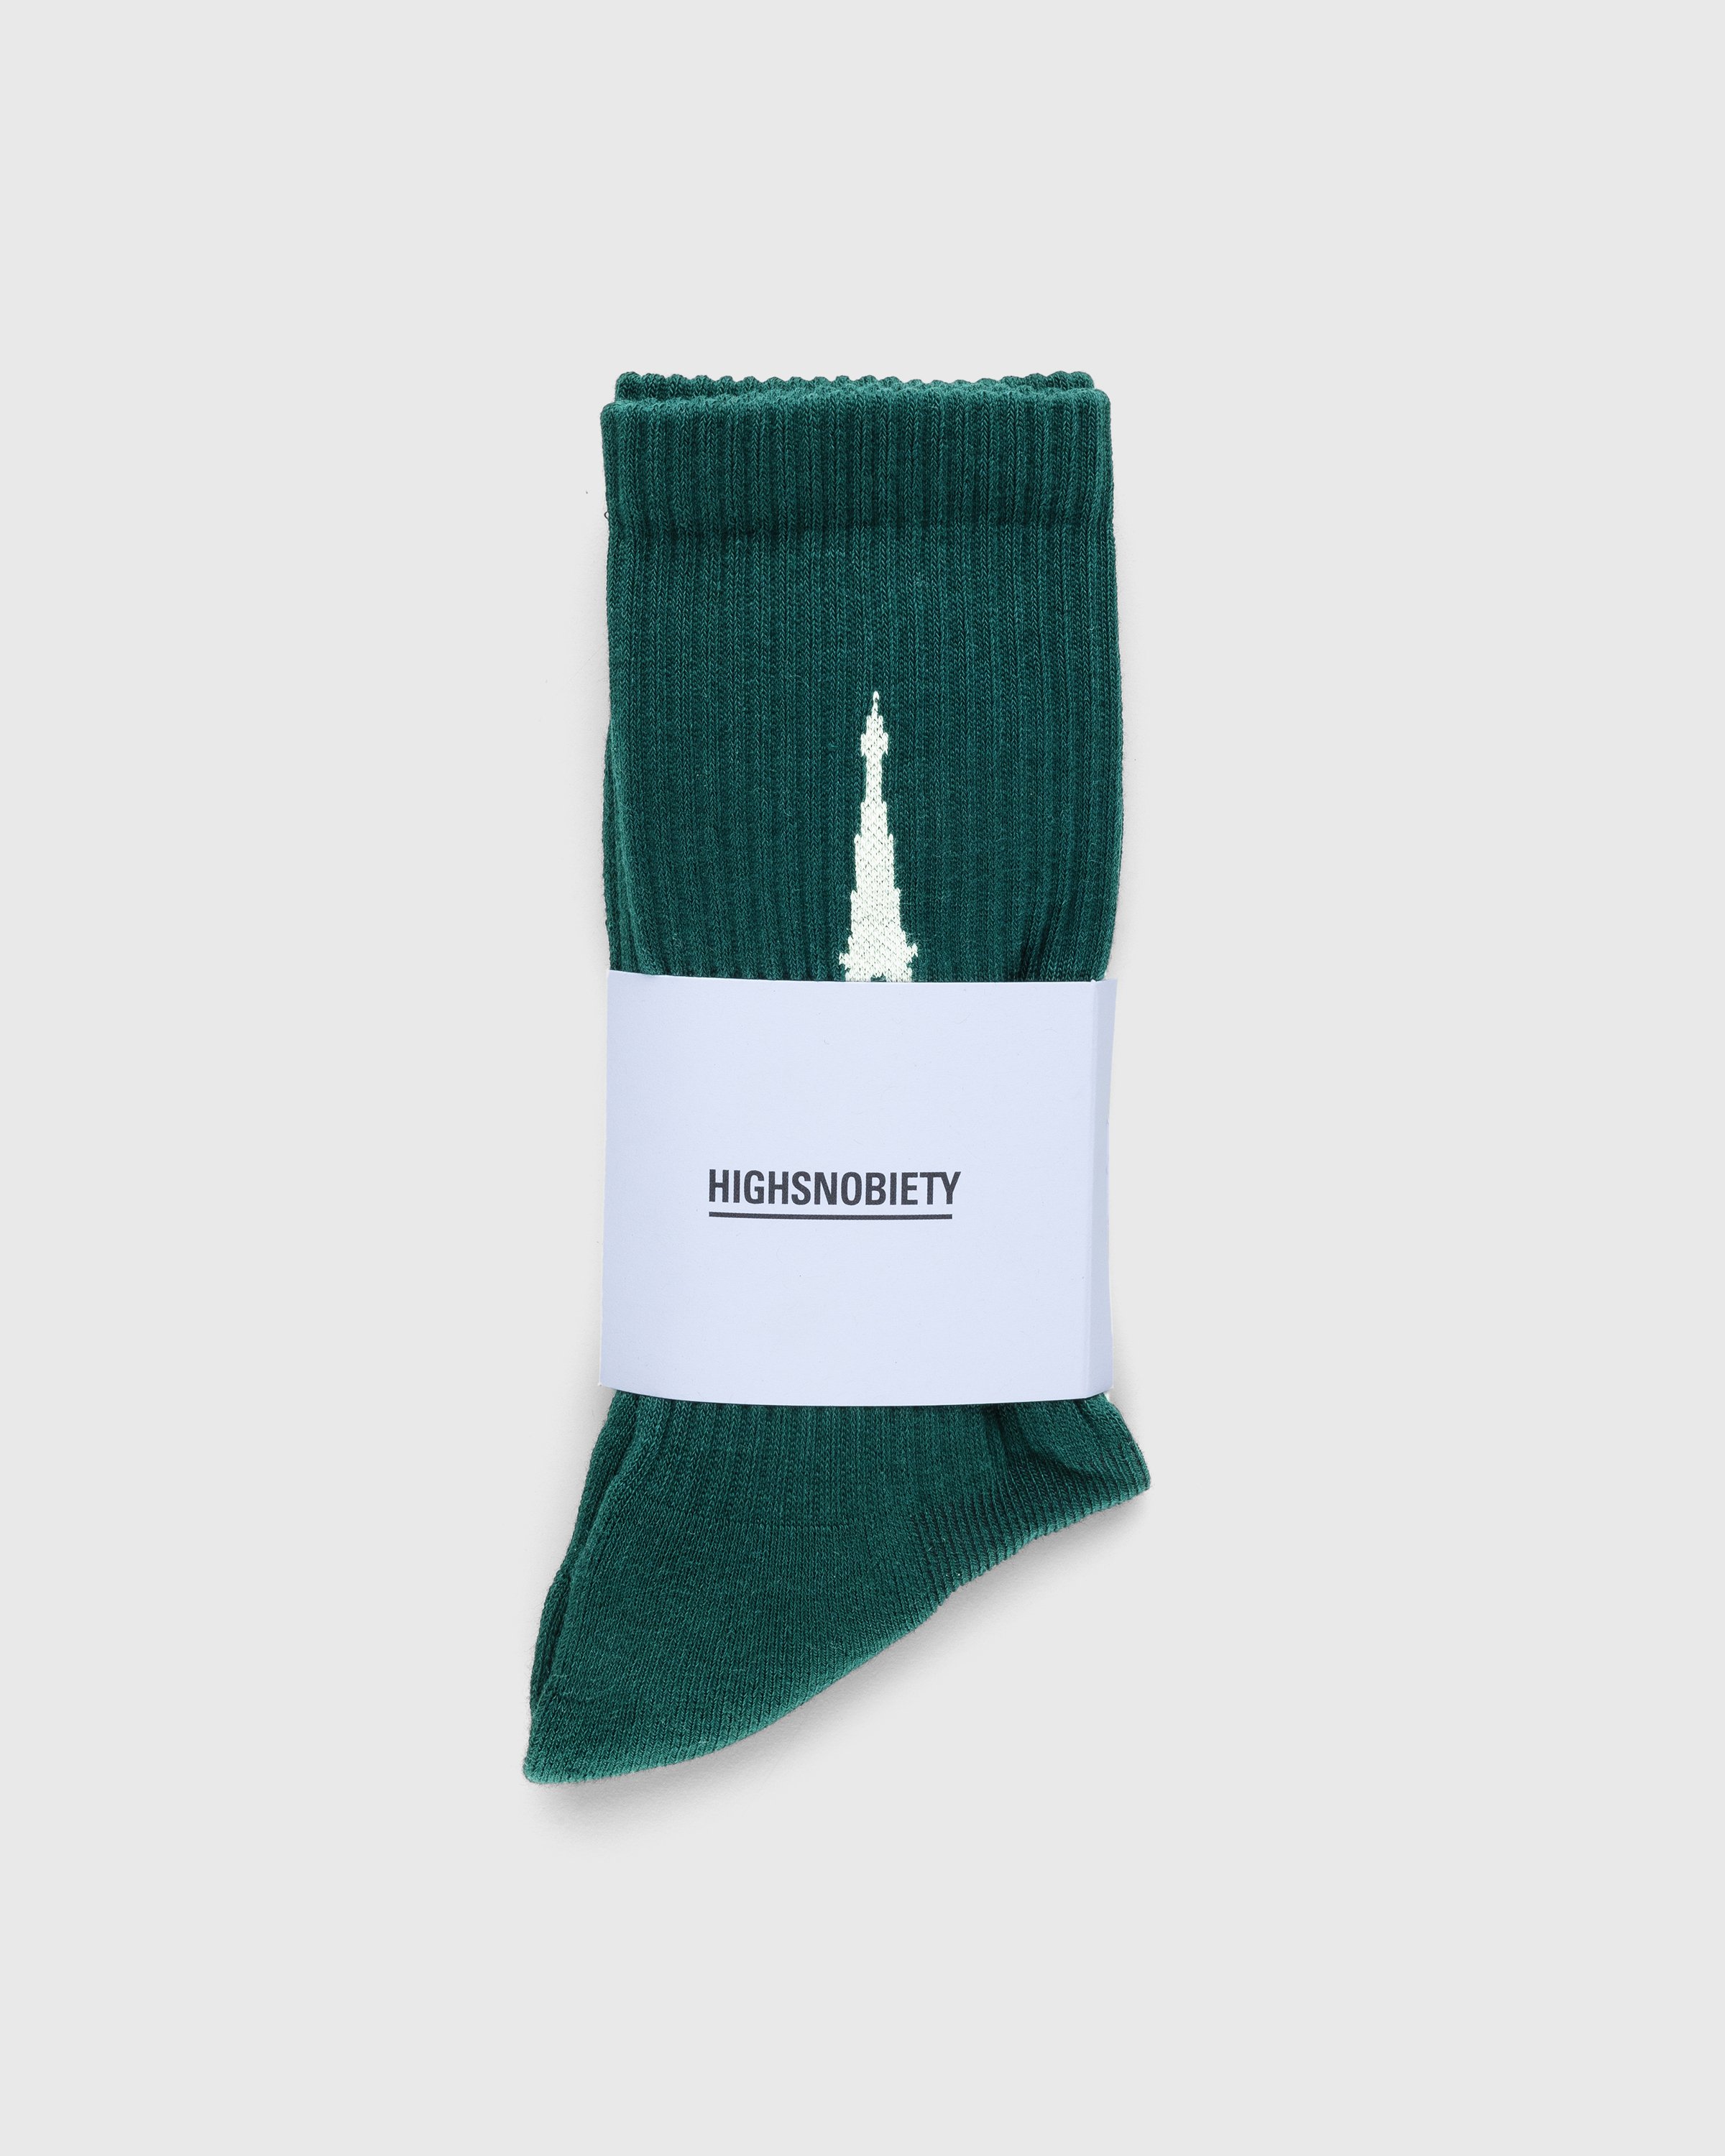 Highsnobiety - Not In Paris 4 Eiffel Tower Socks Dark Green - Accessories - Green - Image 2